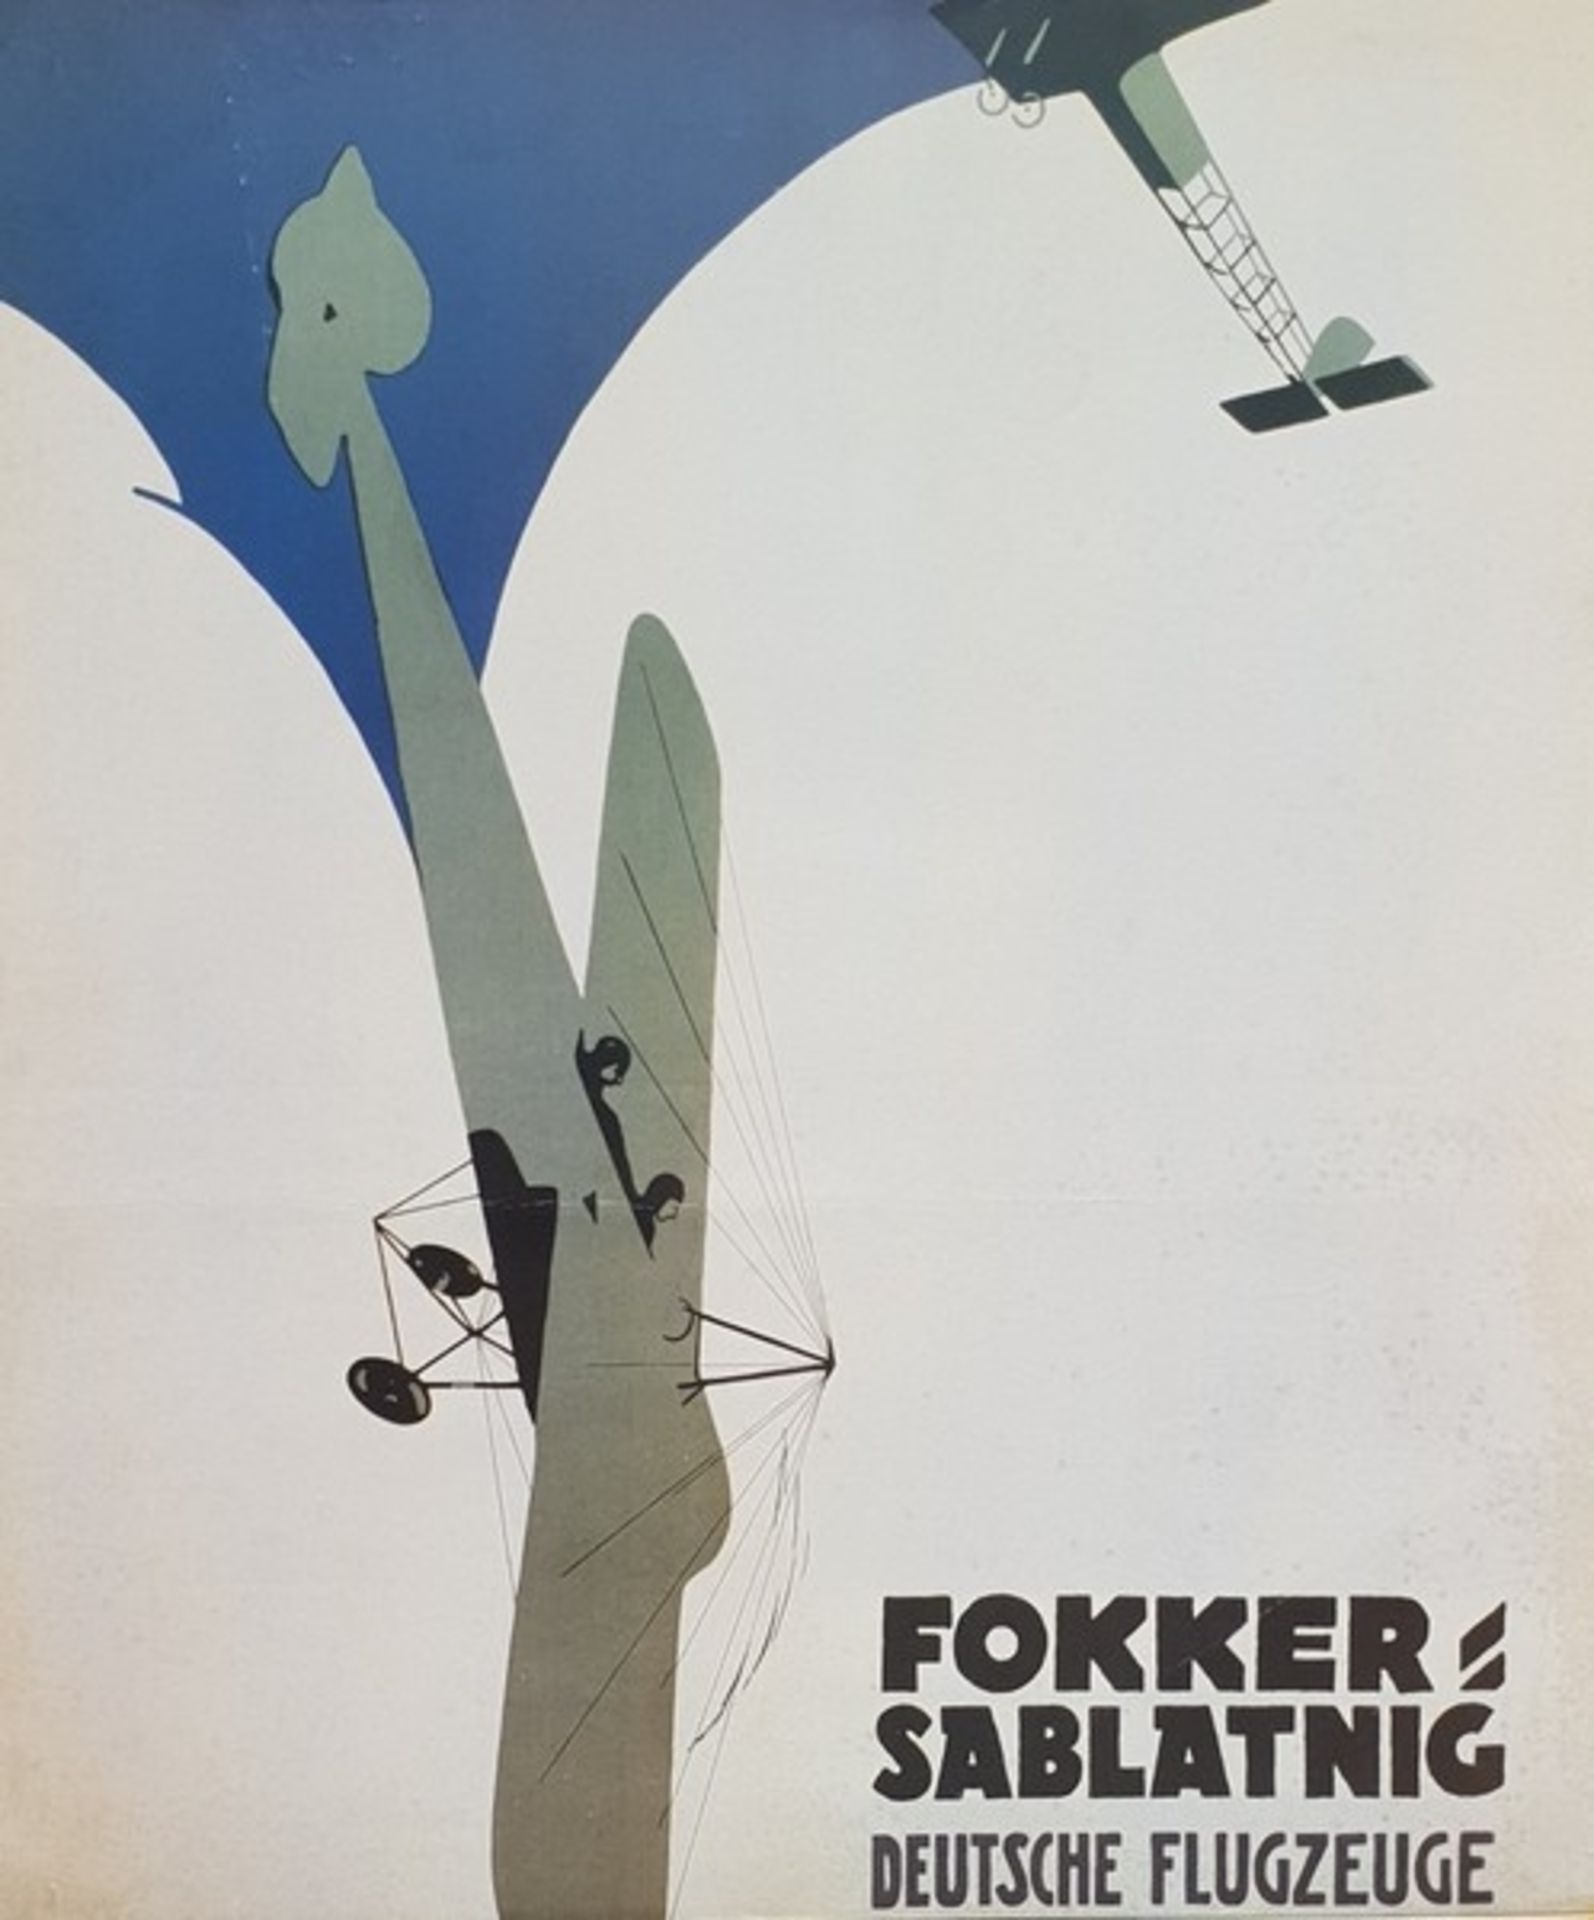 Fokker-Sablatnig Deutsche Flugzeuge Plakat ,alte Reproduktion, teilweise Stockfleckig, beschmutz